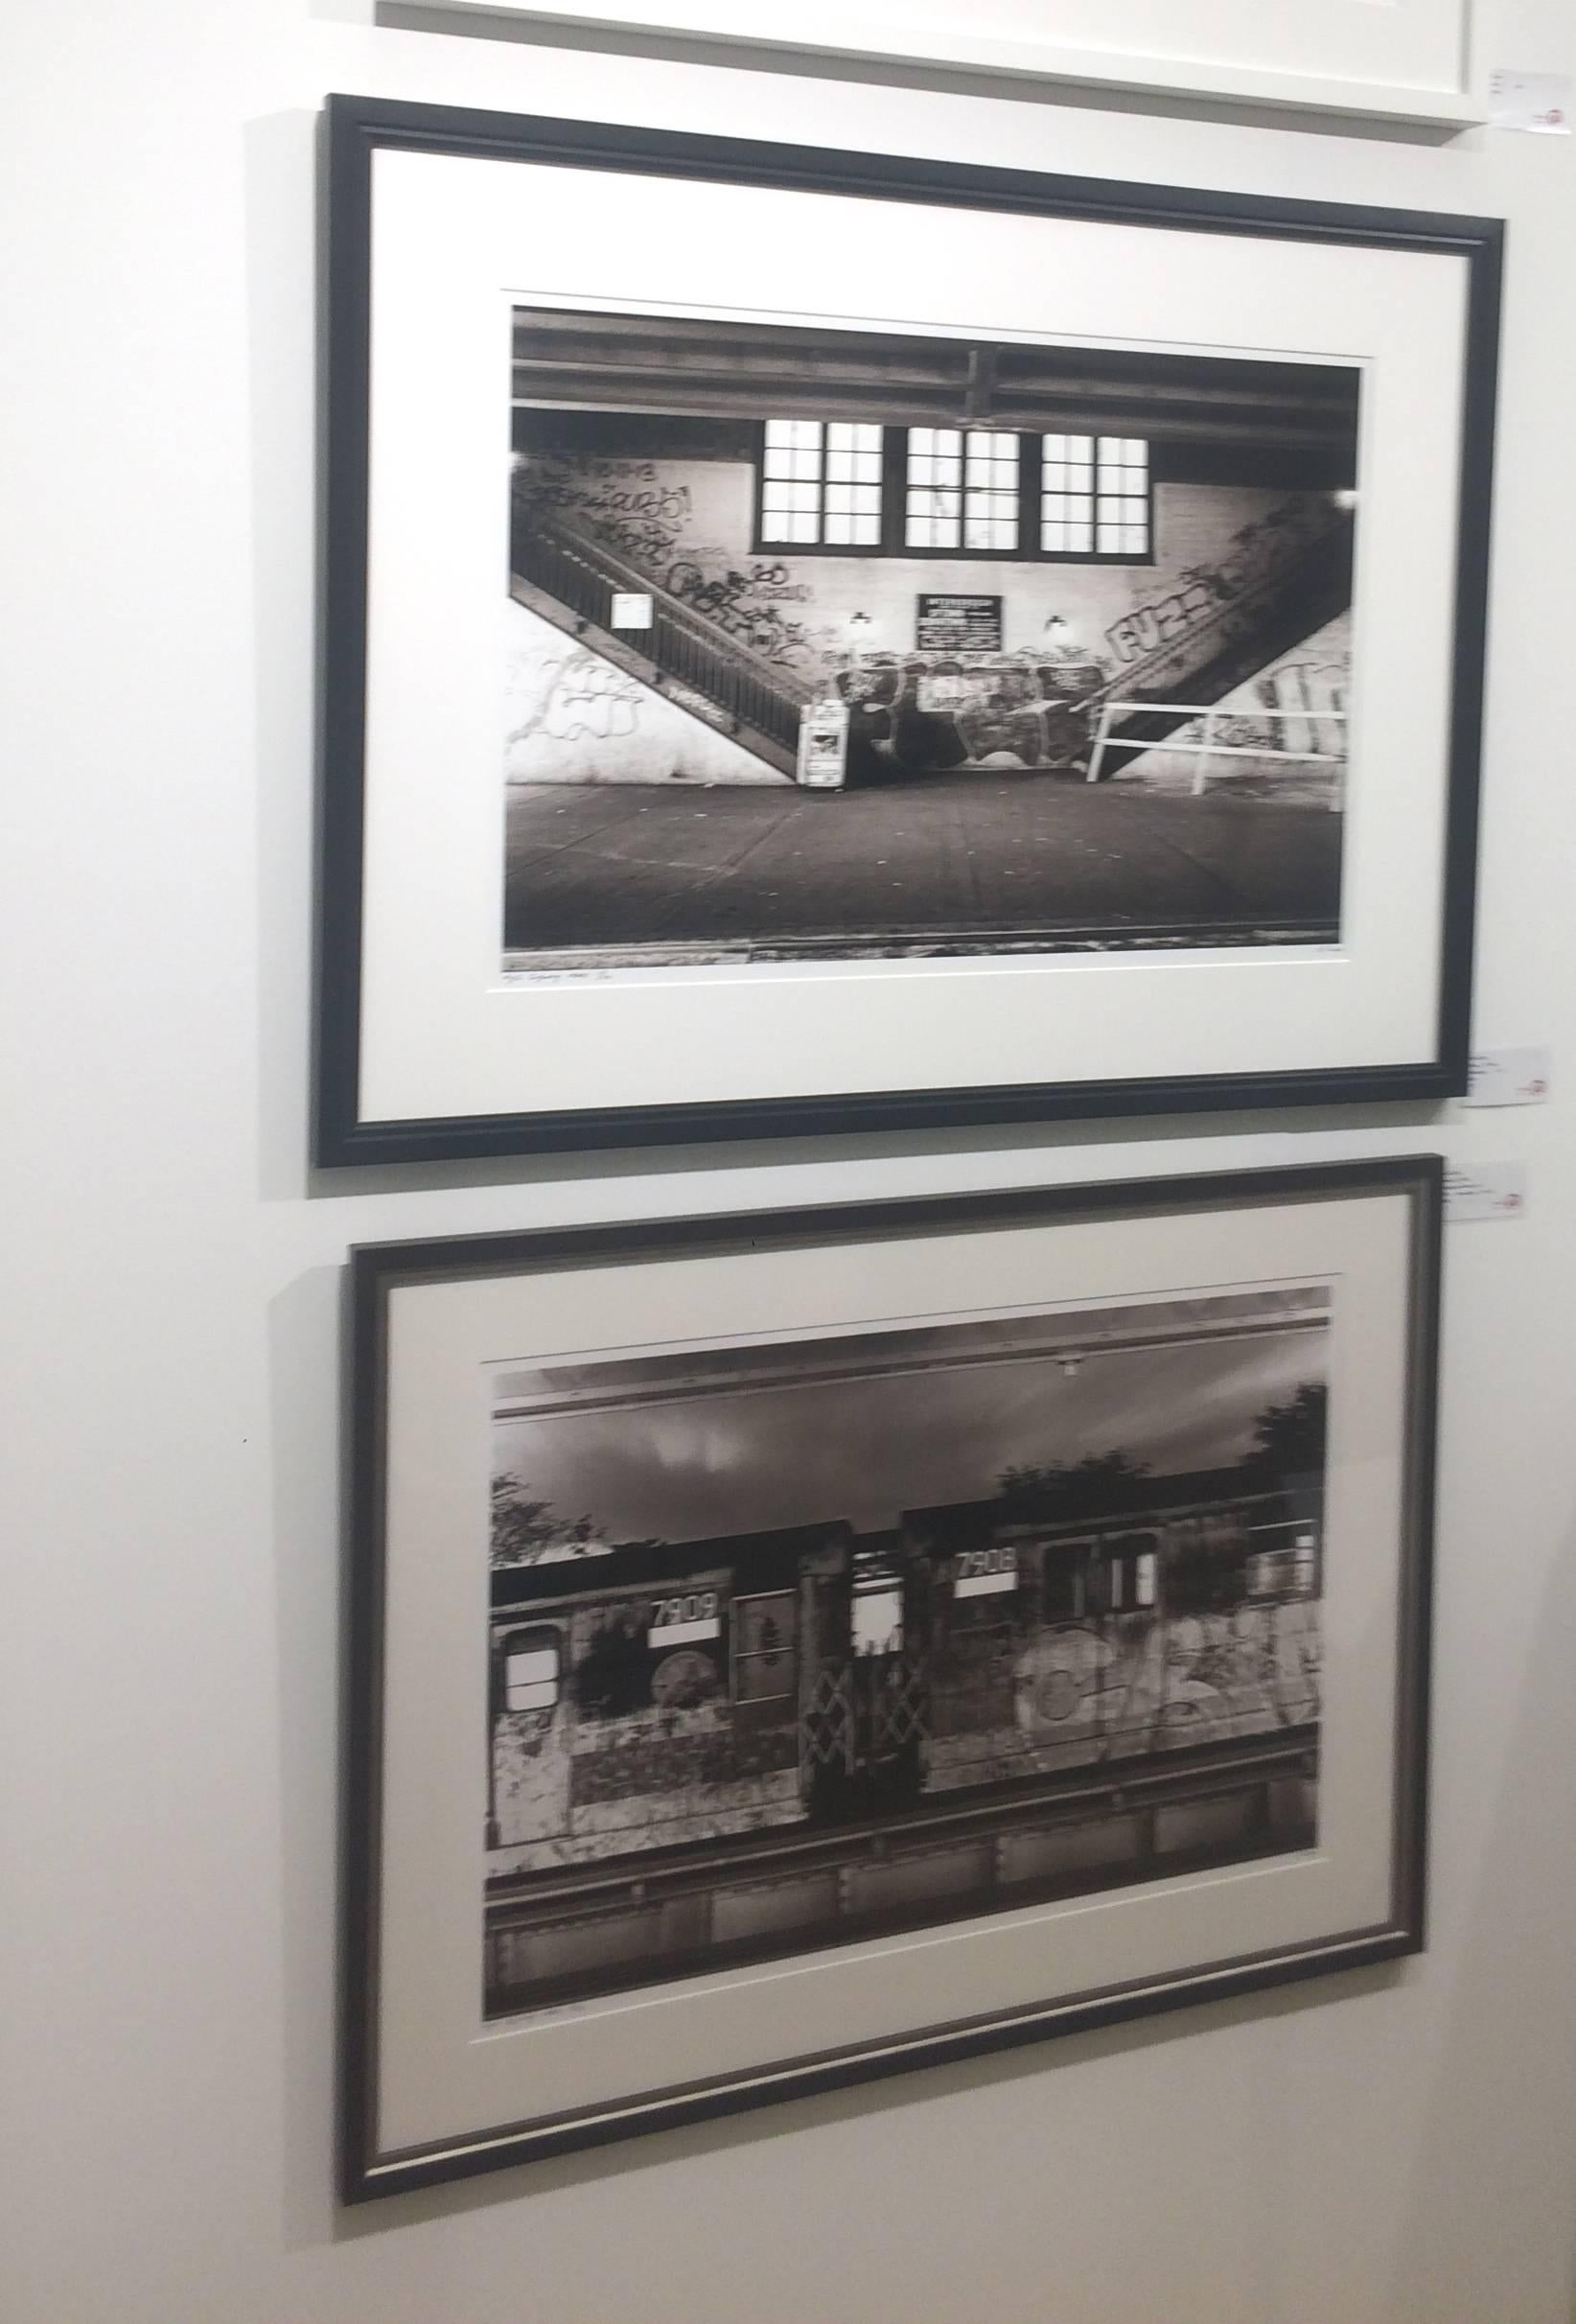 John Conns New York City Subway-Fotografien in limitierter Auflage wurden ursprünglich zwischen 1975 und 1982 aufgenommen.  Jedes Schwarz-Weiß-Foto ist signiert und nummeriert.   Auflage von 15.  20x30 Bild gedruckt auf 24x36 Archivpapier. Dieses